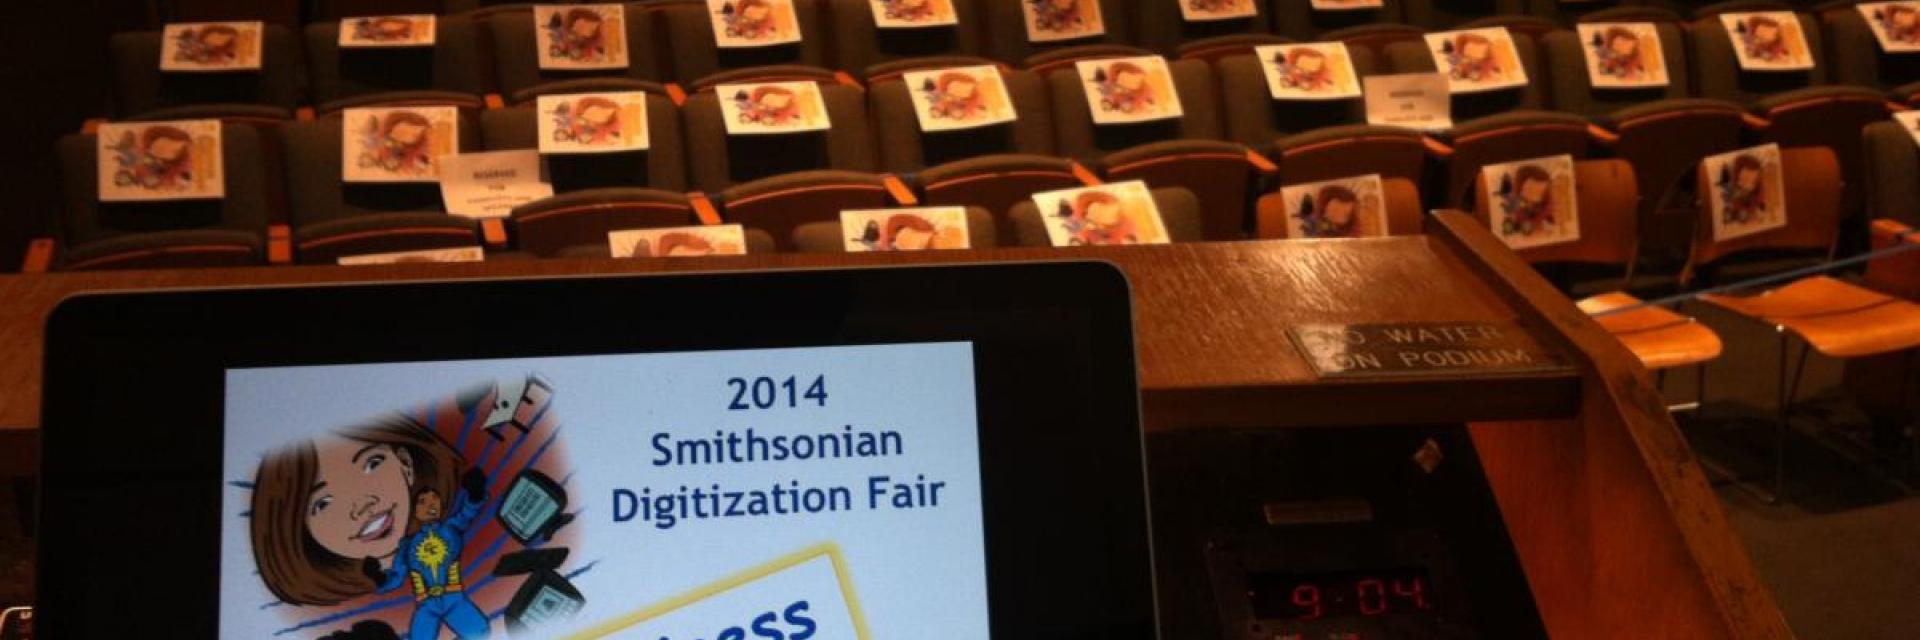 2014 Smithsonian Institution Digitization Fair